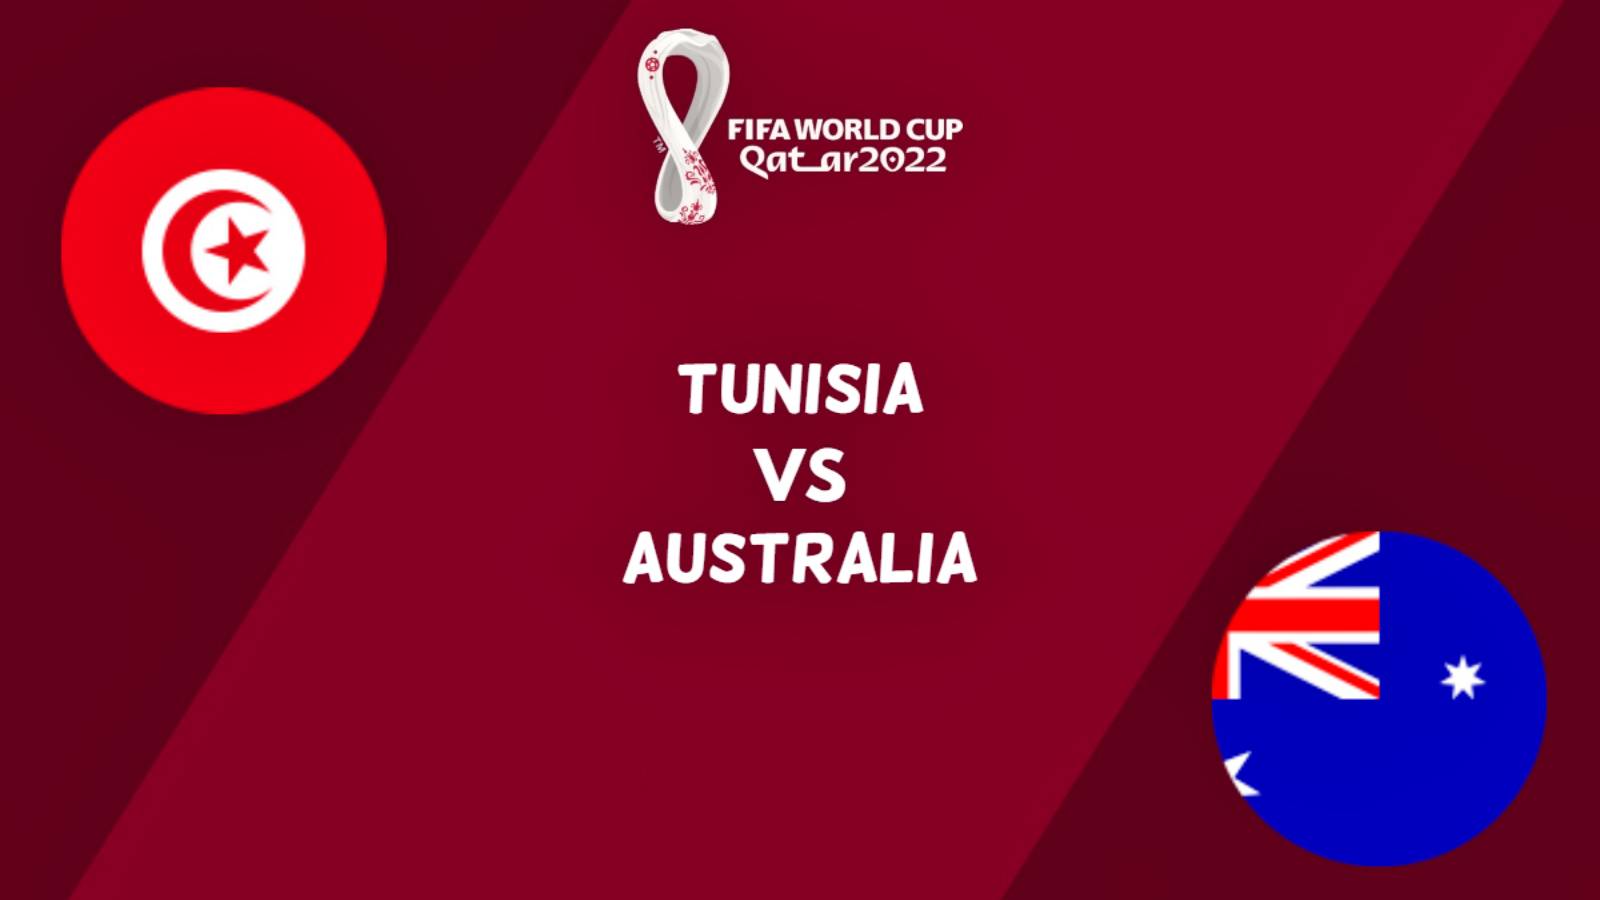 TUNISIA – AUSTRALIA LIVE TVR 1 CAMPIONATO DEL MONDO 2022 QATAR